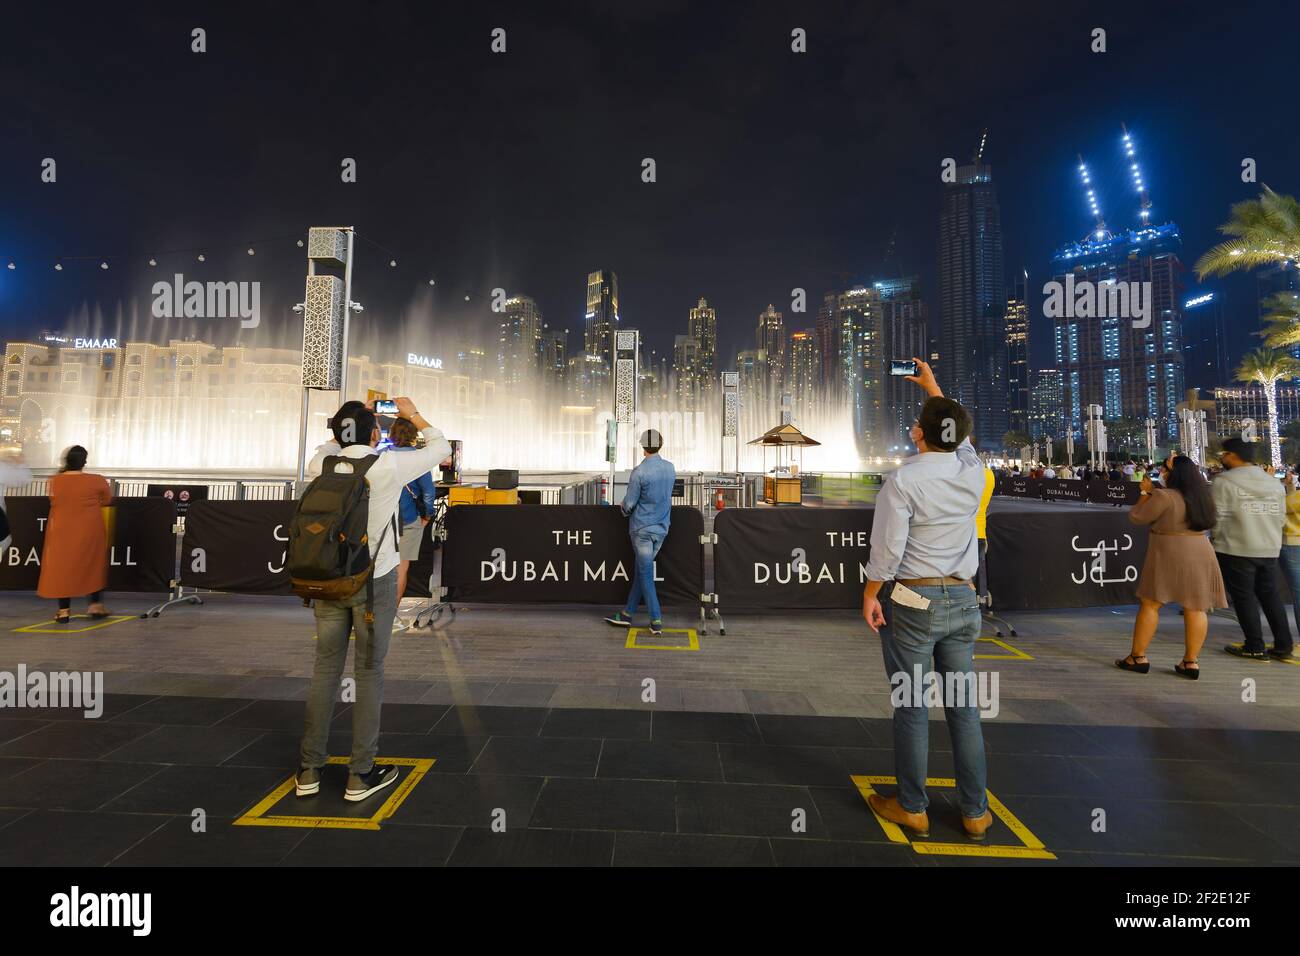 Die Dubai Fountain Show mit Grundzeichen für soziale Distanzierung für Touristen, die während einer Pandemie reisen. Touristenattraktion während der COVID-19 in Dubai. Stockfoto